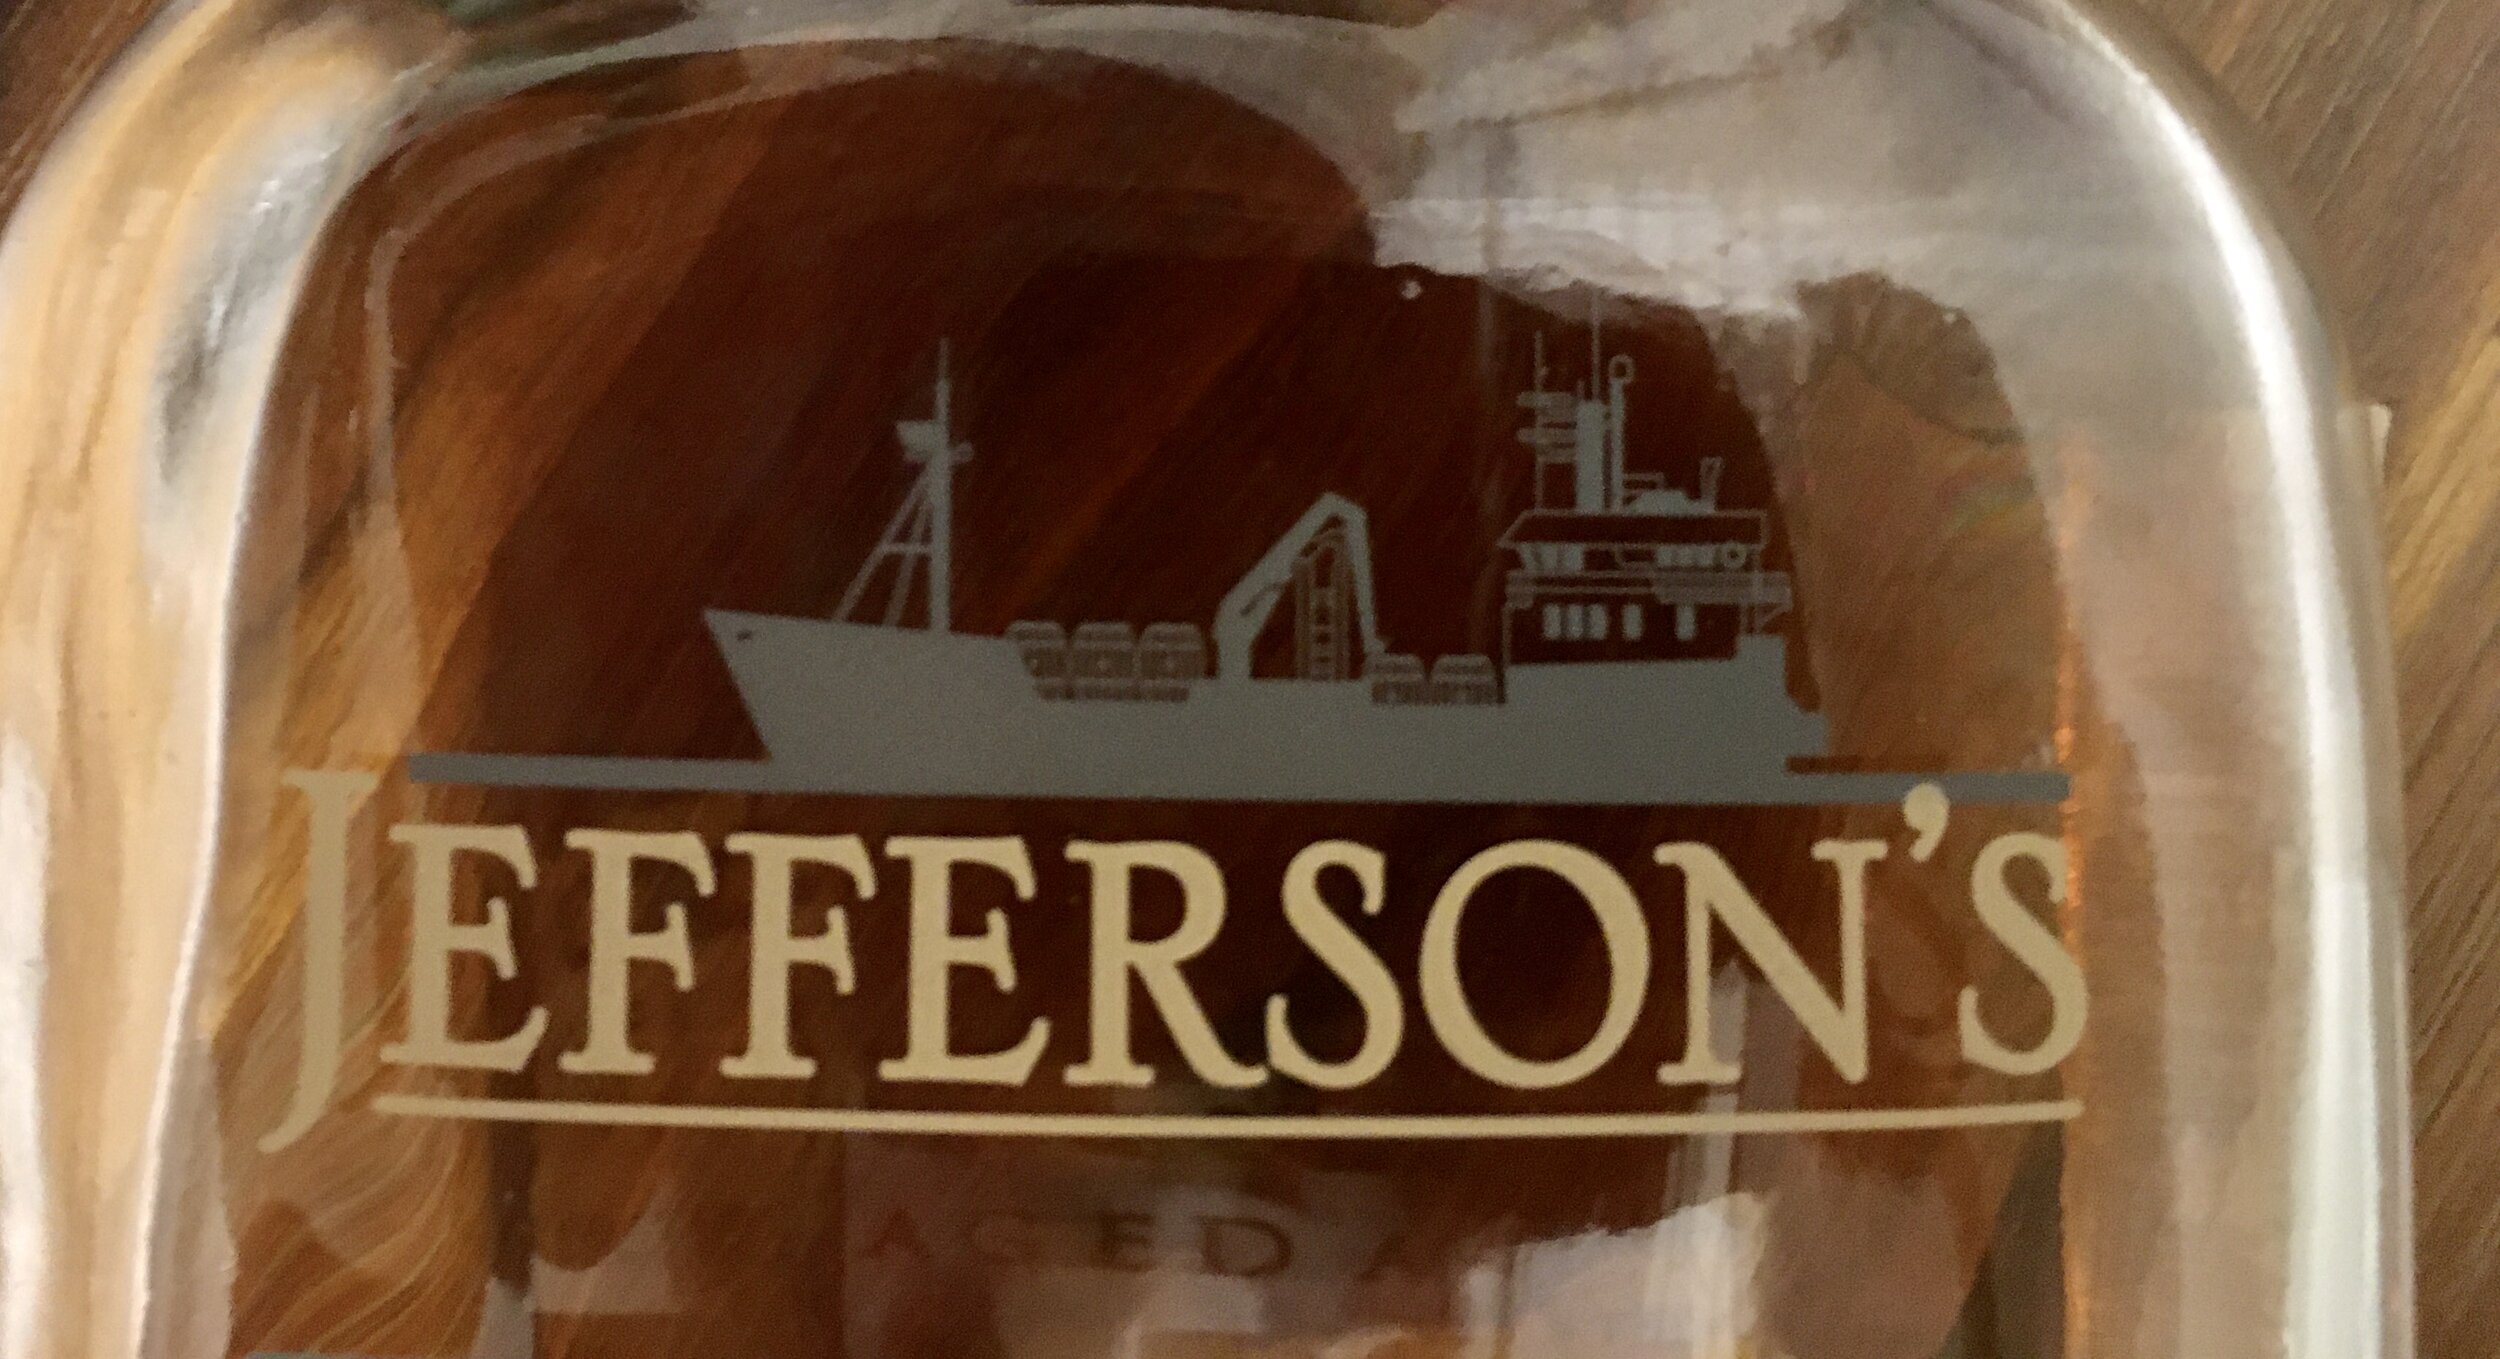 Jefferson's Ocean ship on bottle